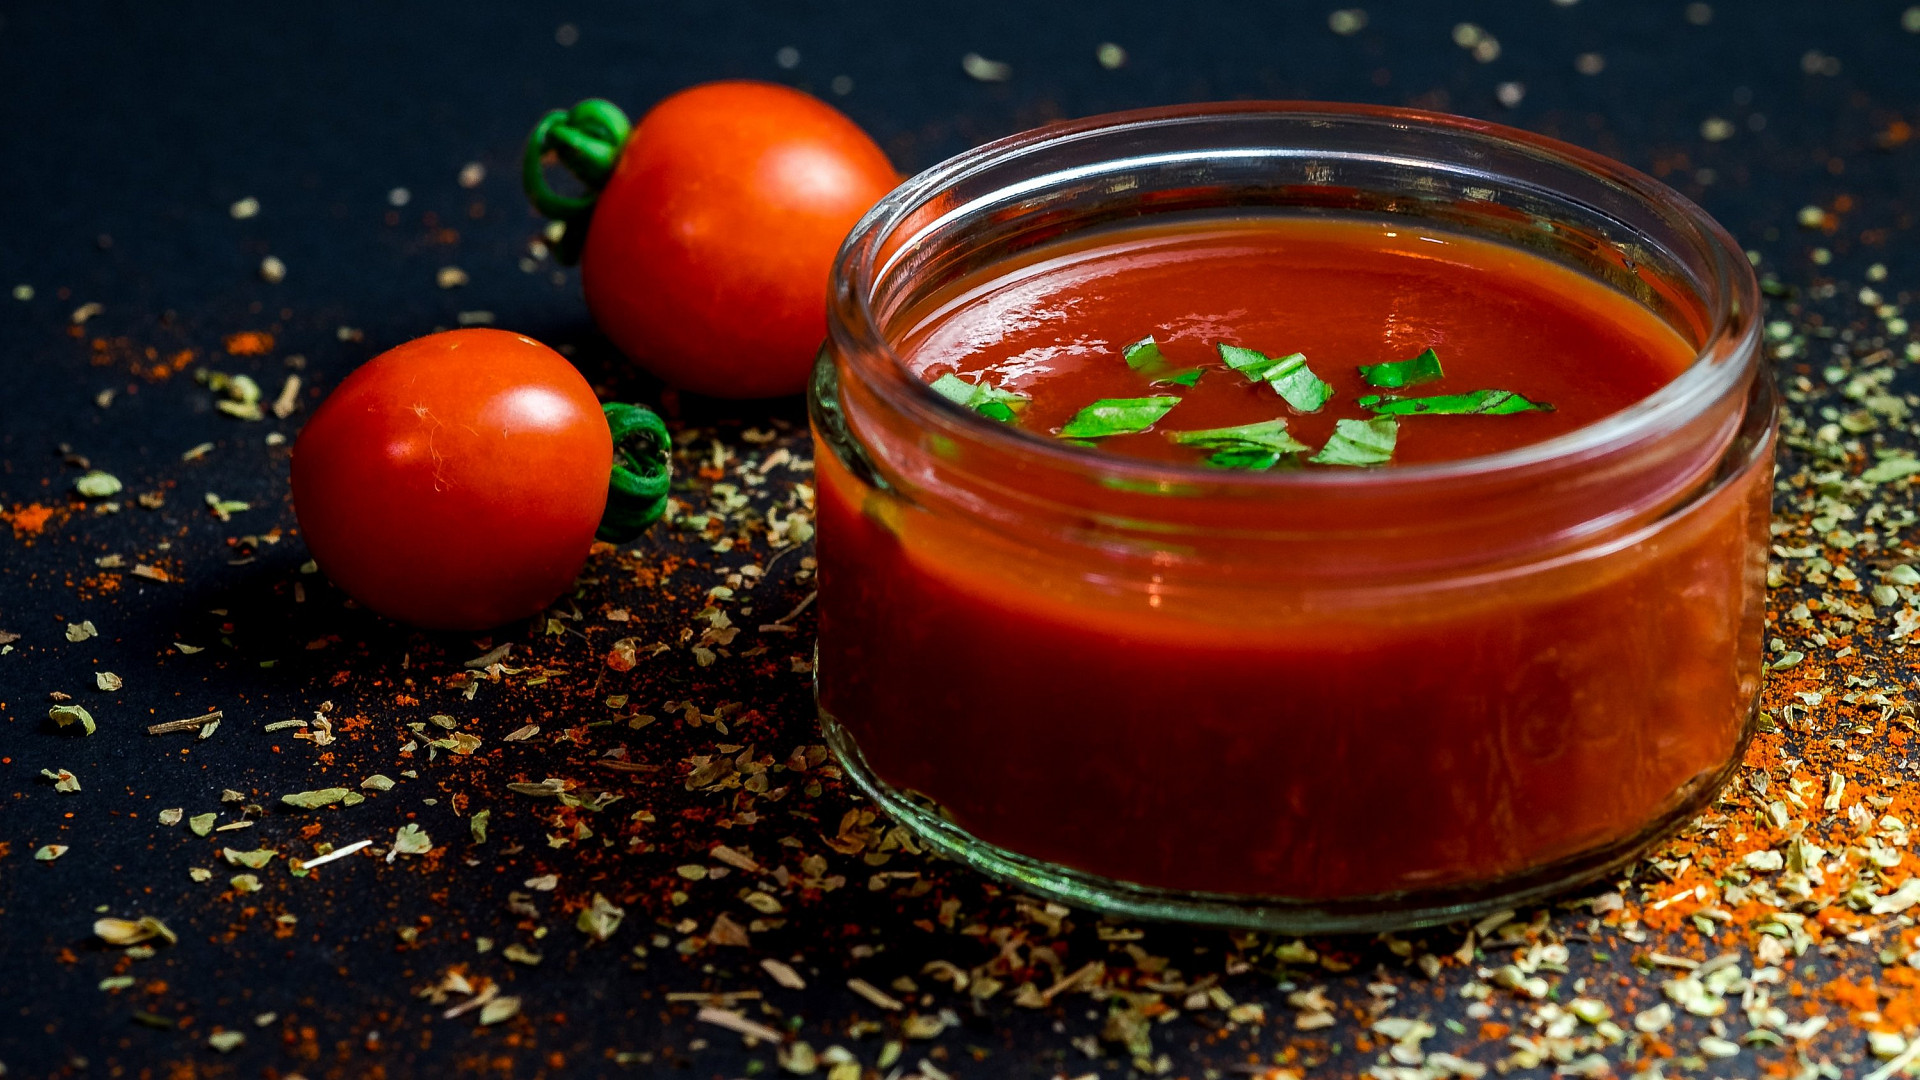 domácí rajčatový protlak si uchová pravou chuť rajčat. jen je potřeba dbát na správnou hustotu i chuť, aby byl výsledek dokonalý